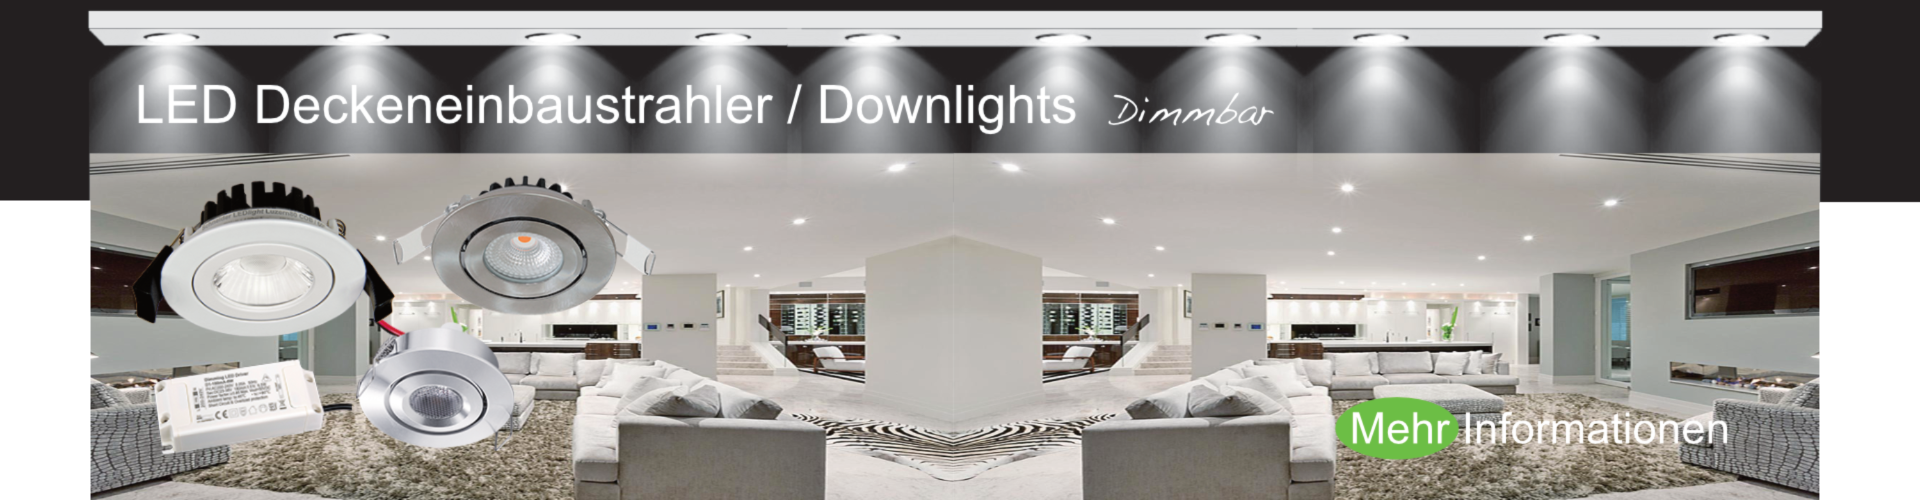 Schneider LED Deckeneinbaustrahler / Downlights